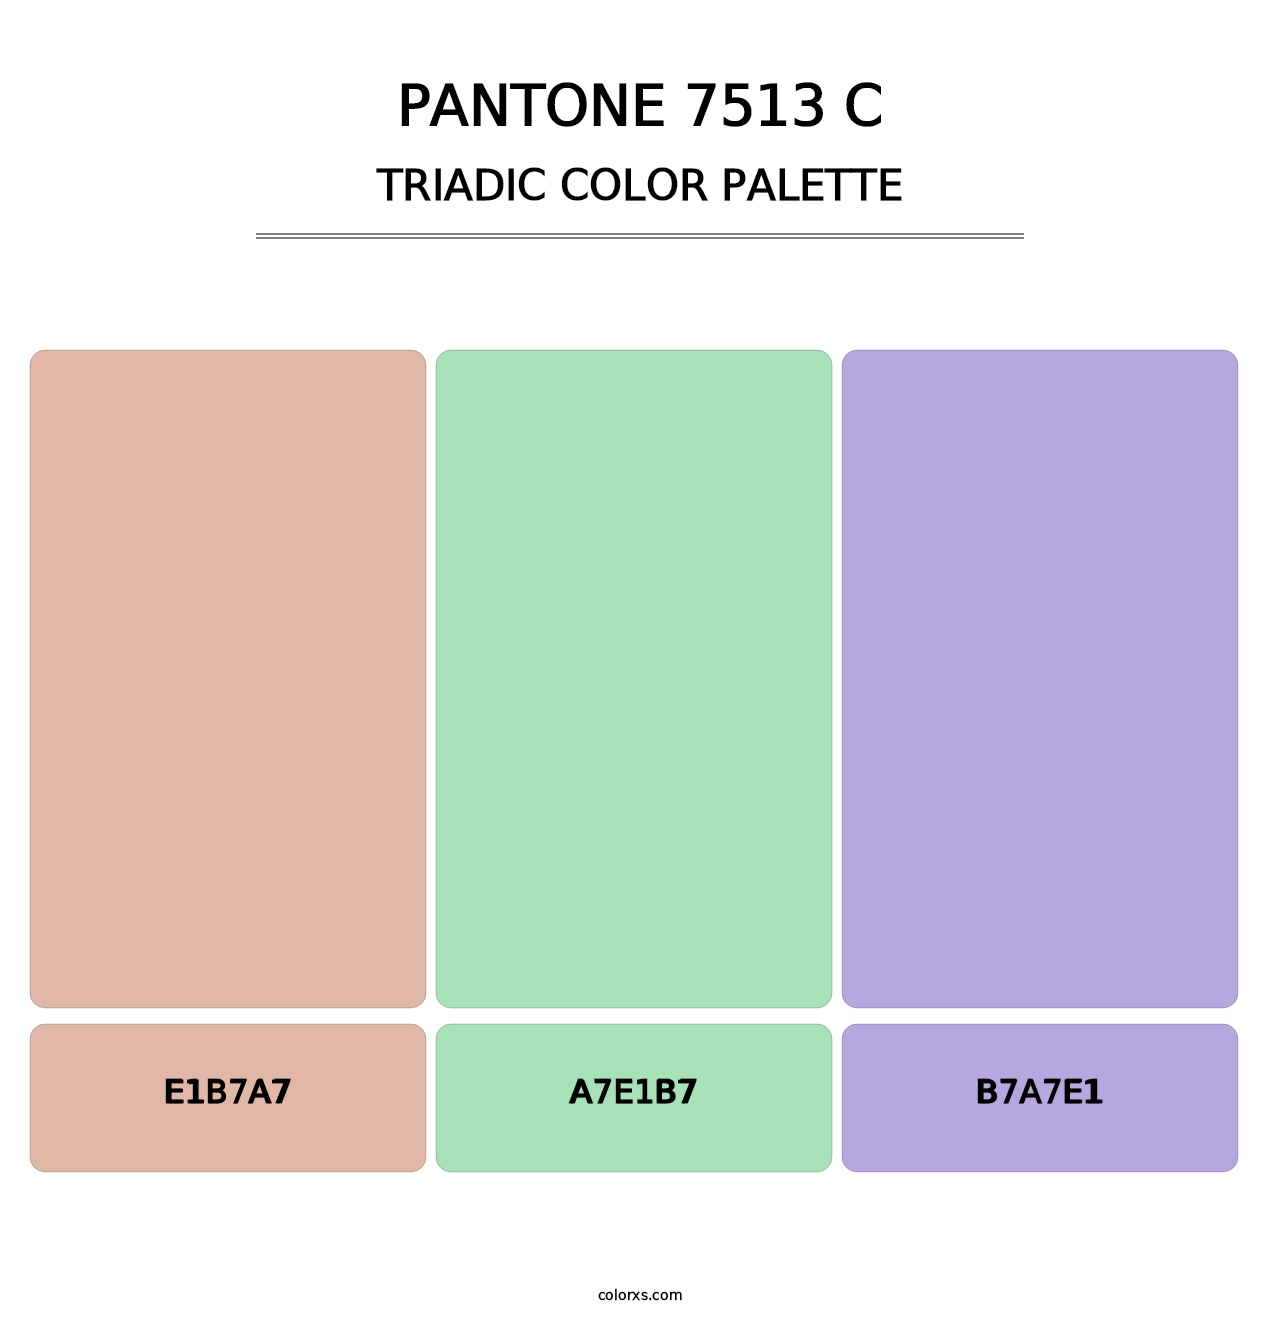 PANTONE 7513 C - Triadic Color Palette